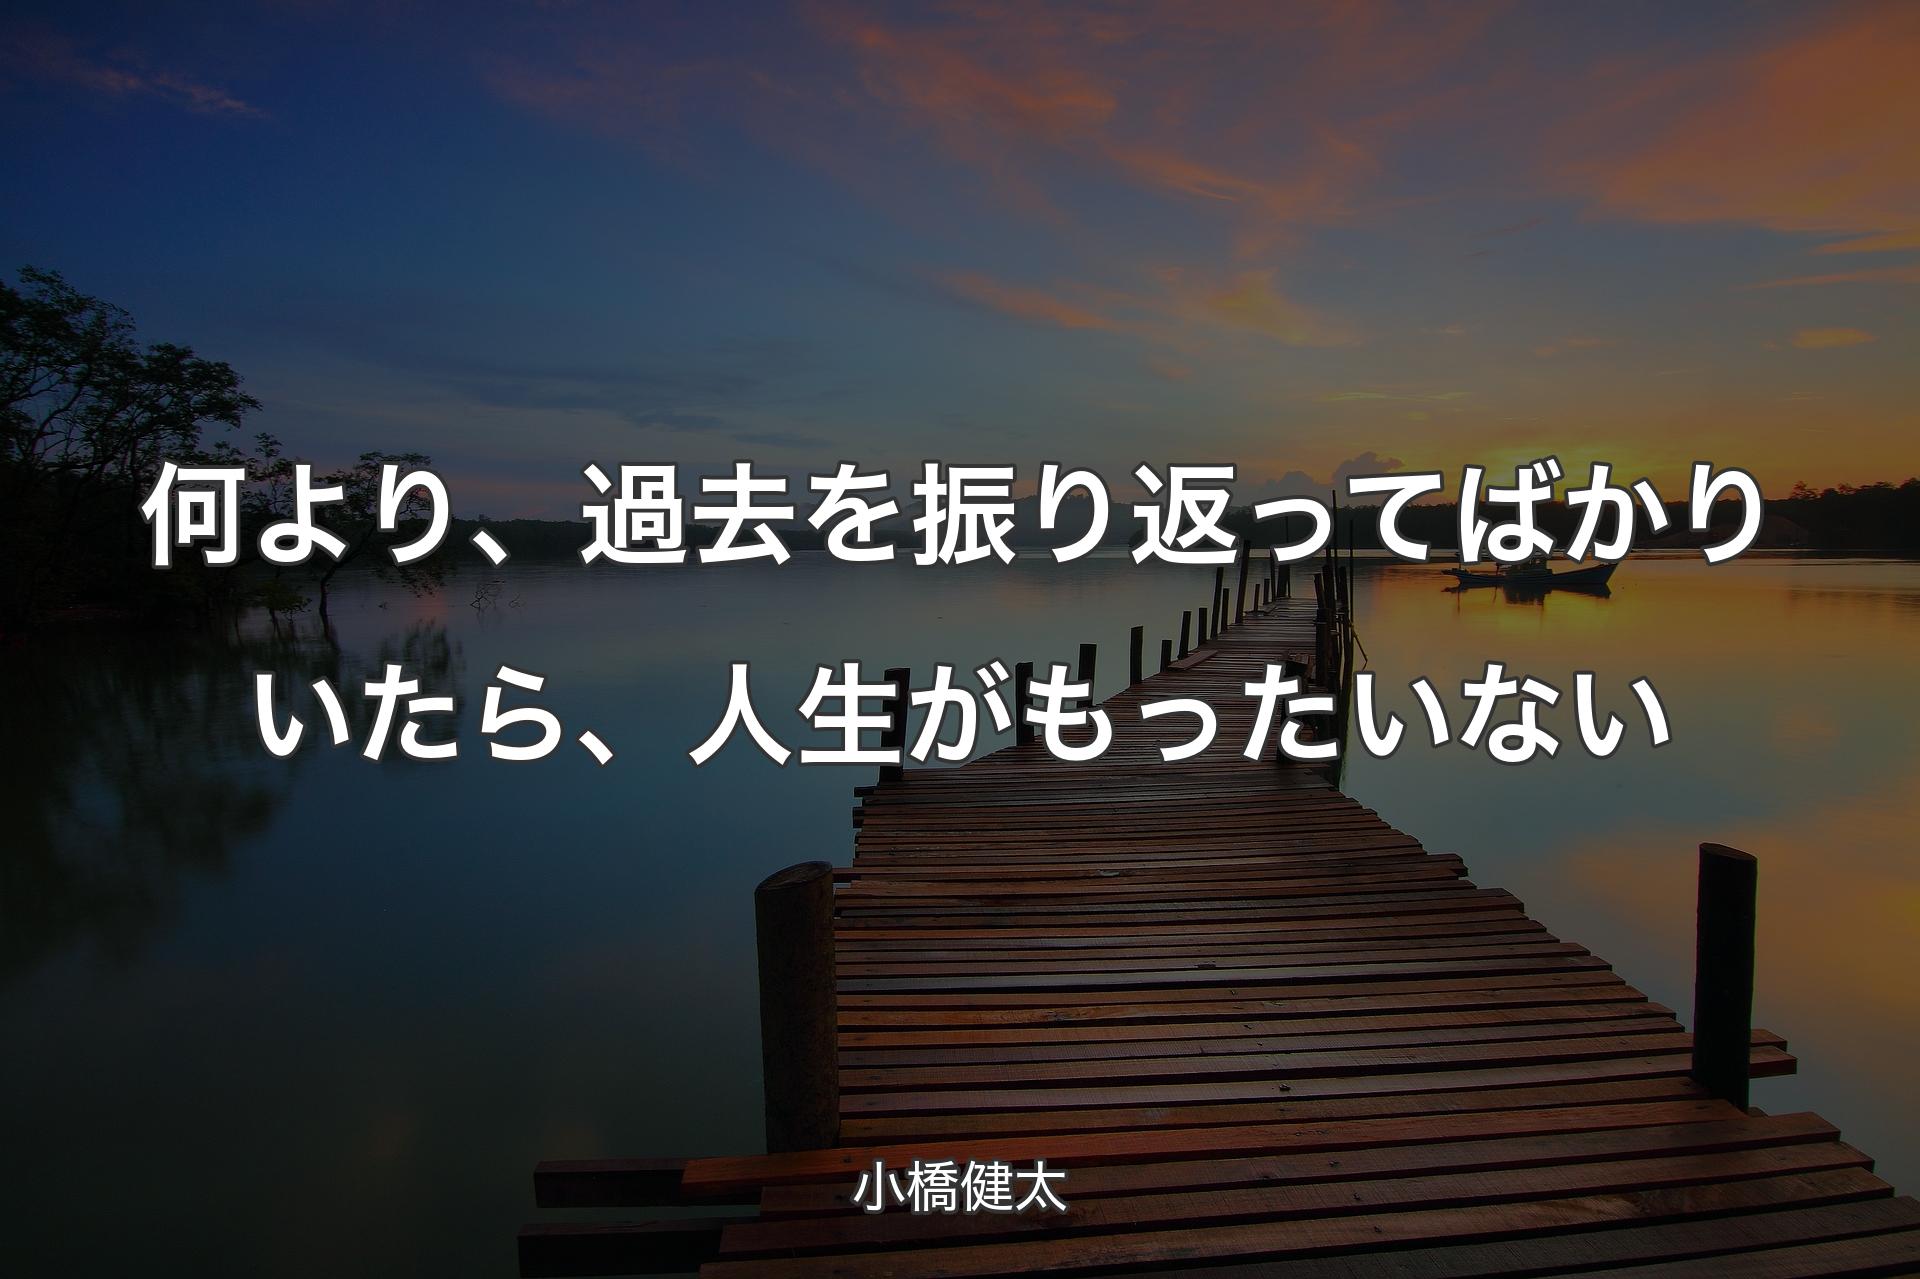 【背景3】何より、過去を振り返ってばかりいたら、人生がもったいない - 小橋健太